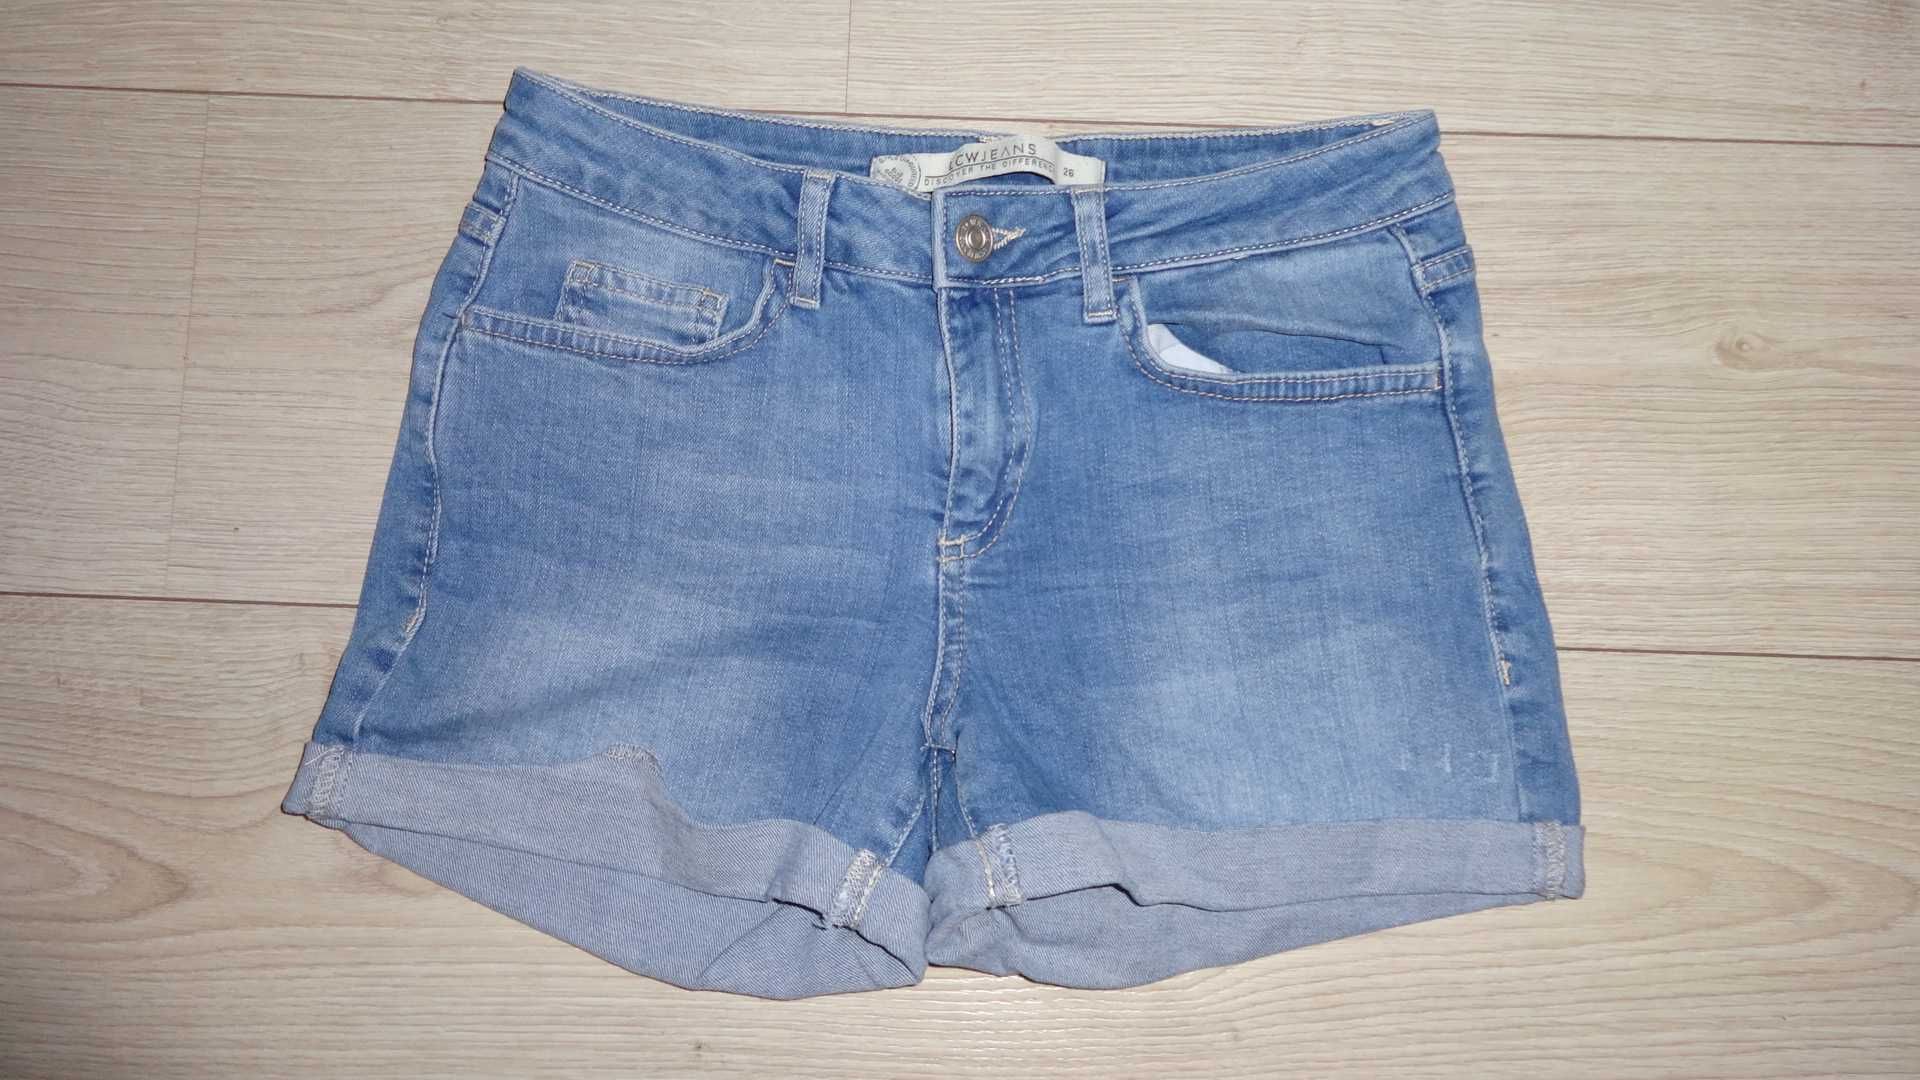 Шорты джинсовые LC WAIKIKI size: 26 все на ФОТО замеры